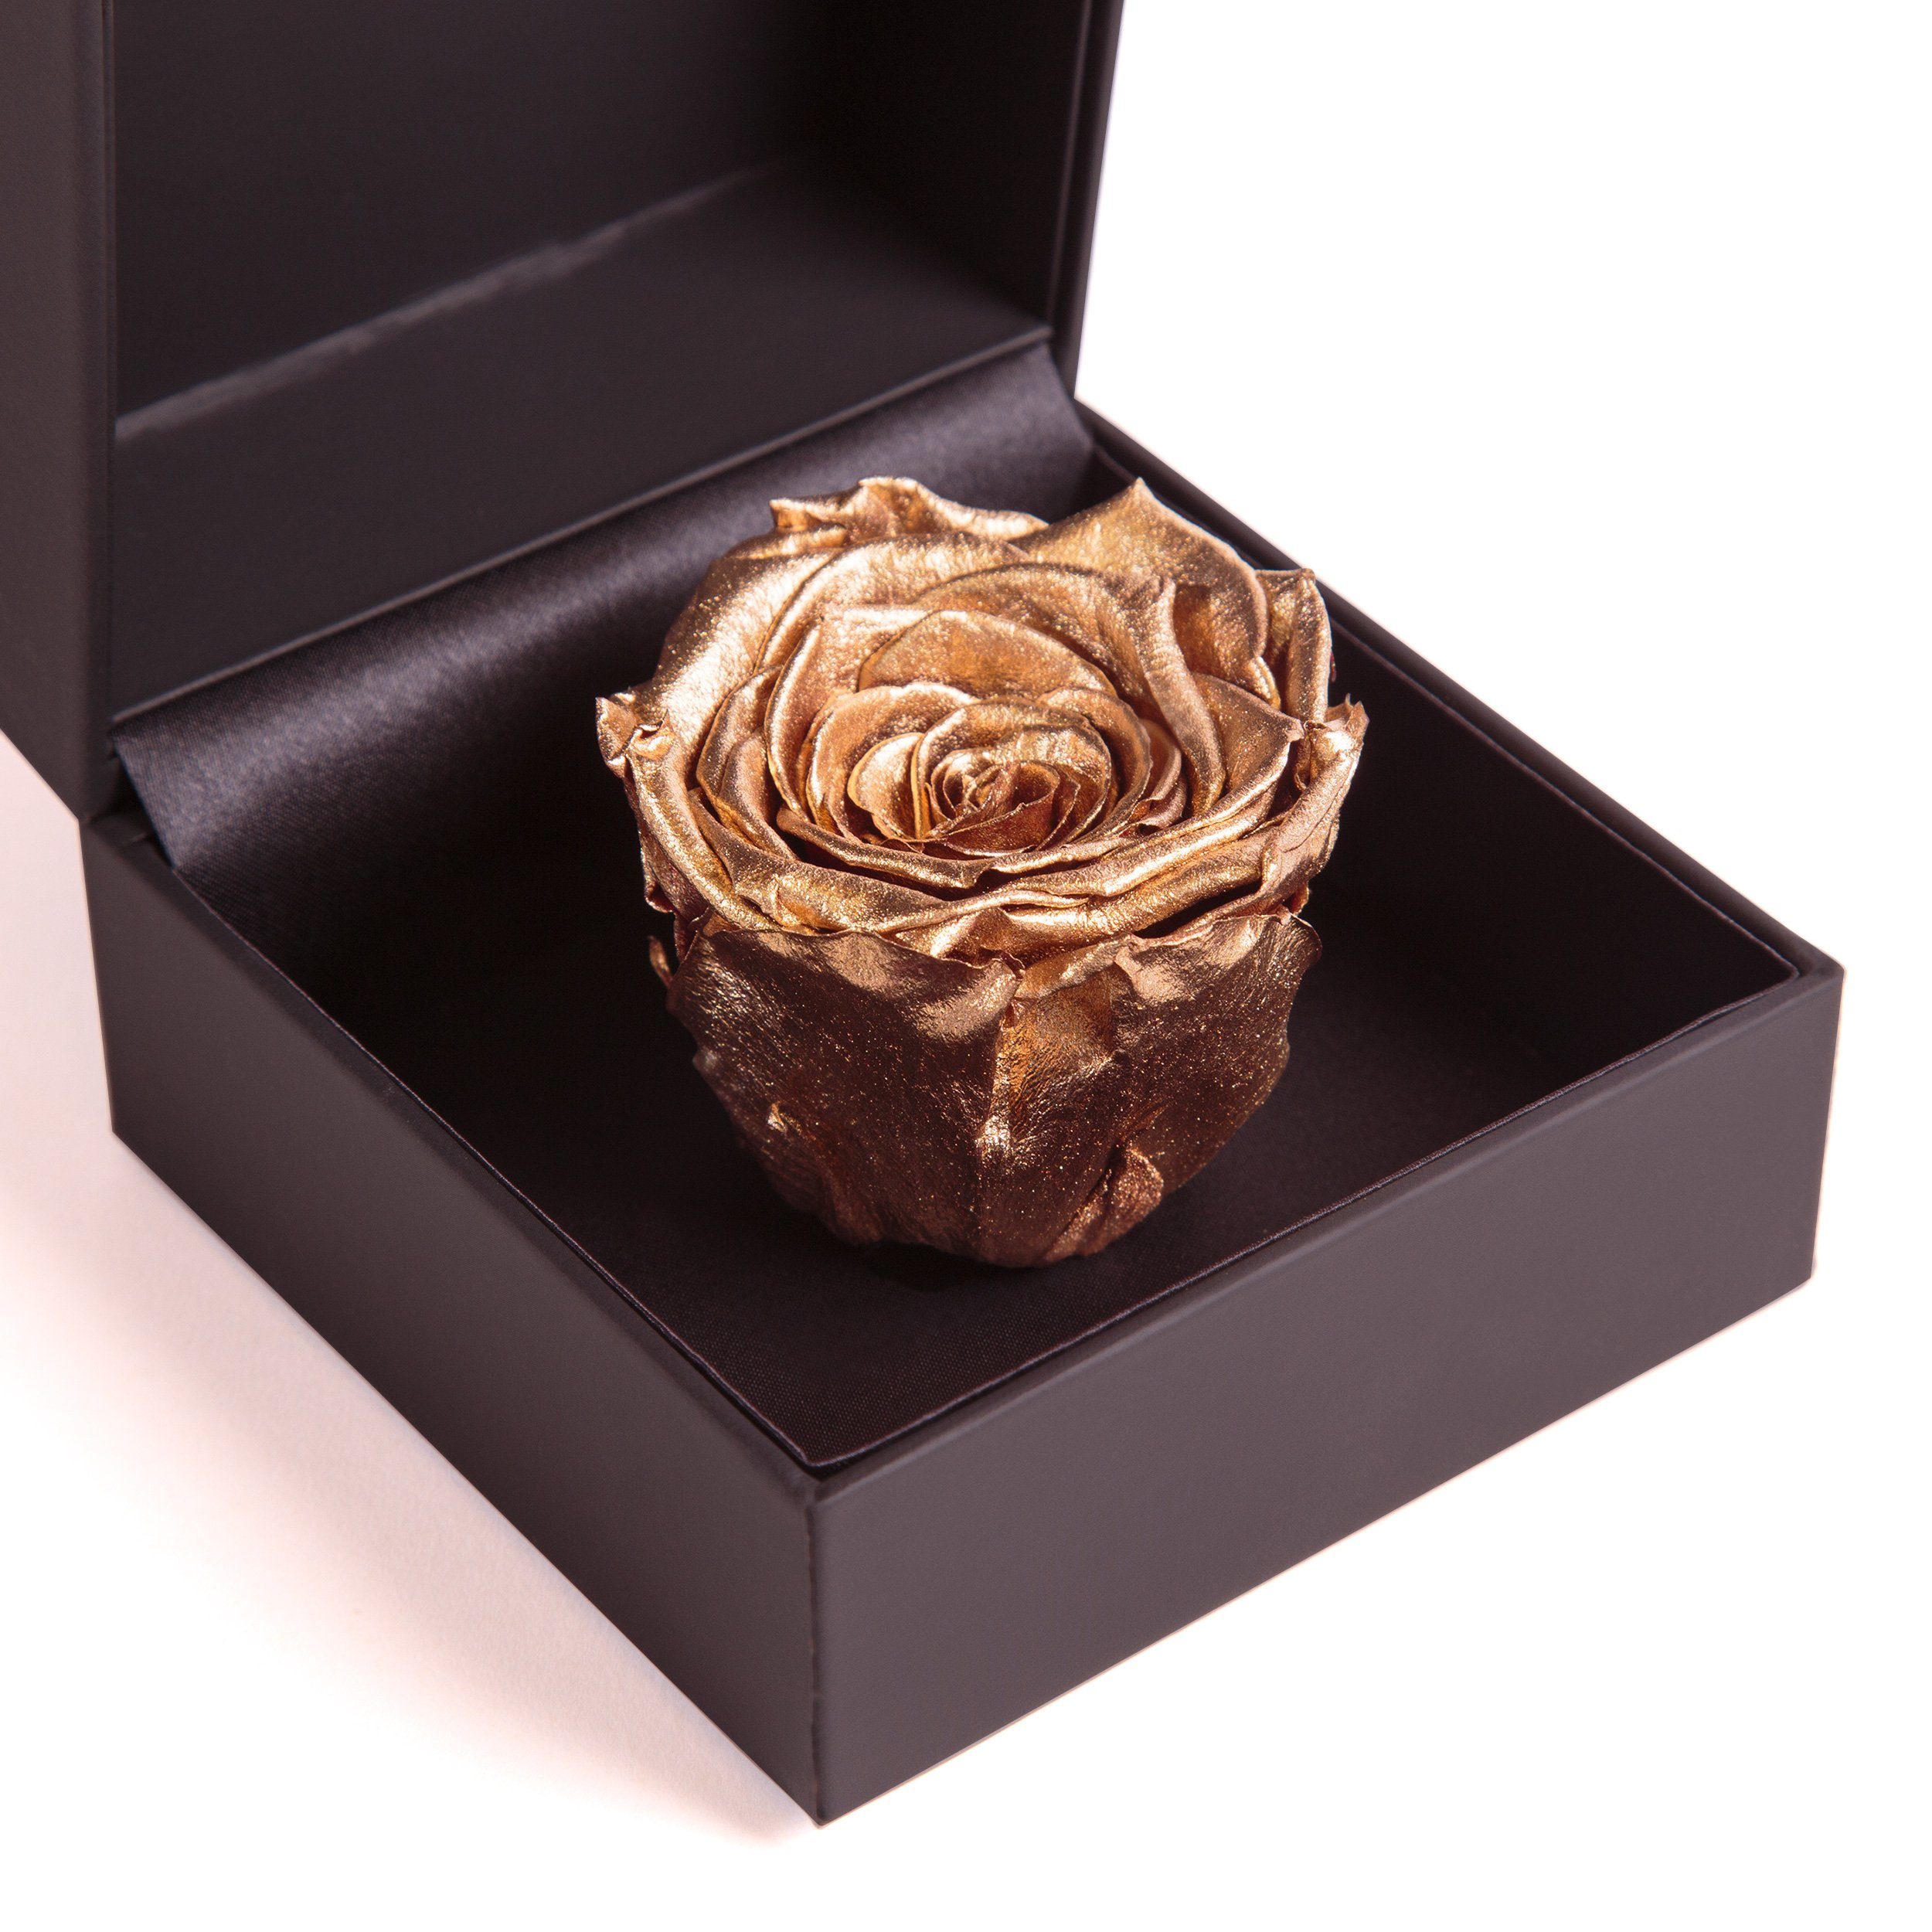 Kunstblume Rosenbox Ringdose Gold Rose in 9 cm, konserviert Langlebige SCHULZ Rose, Höhe Heidelberg, Rose Infinity Box Ringbox Groß ROSEMARIE